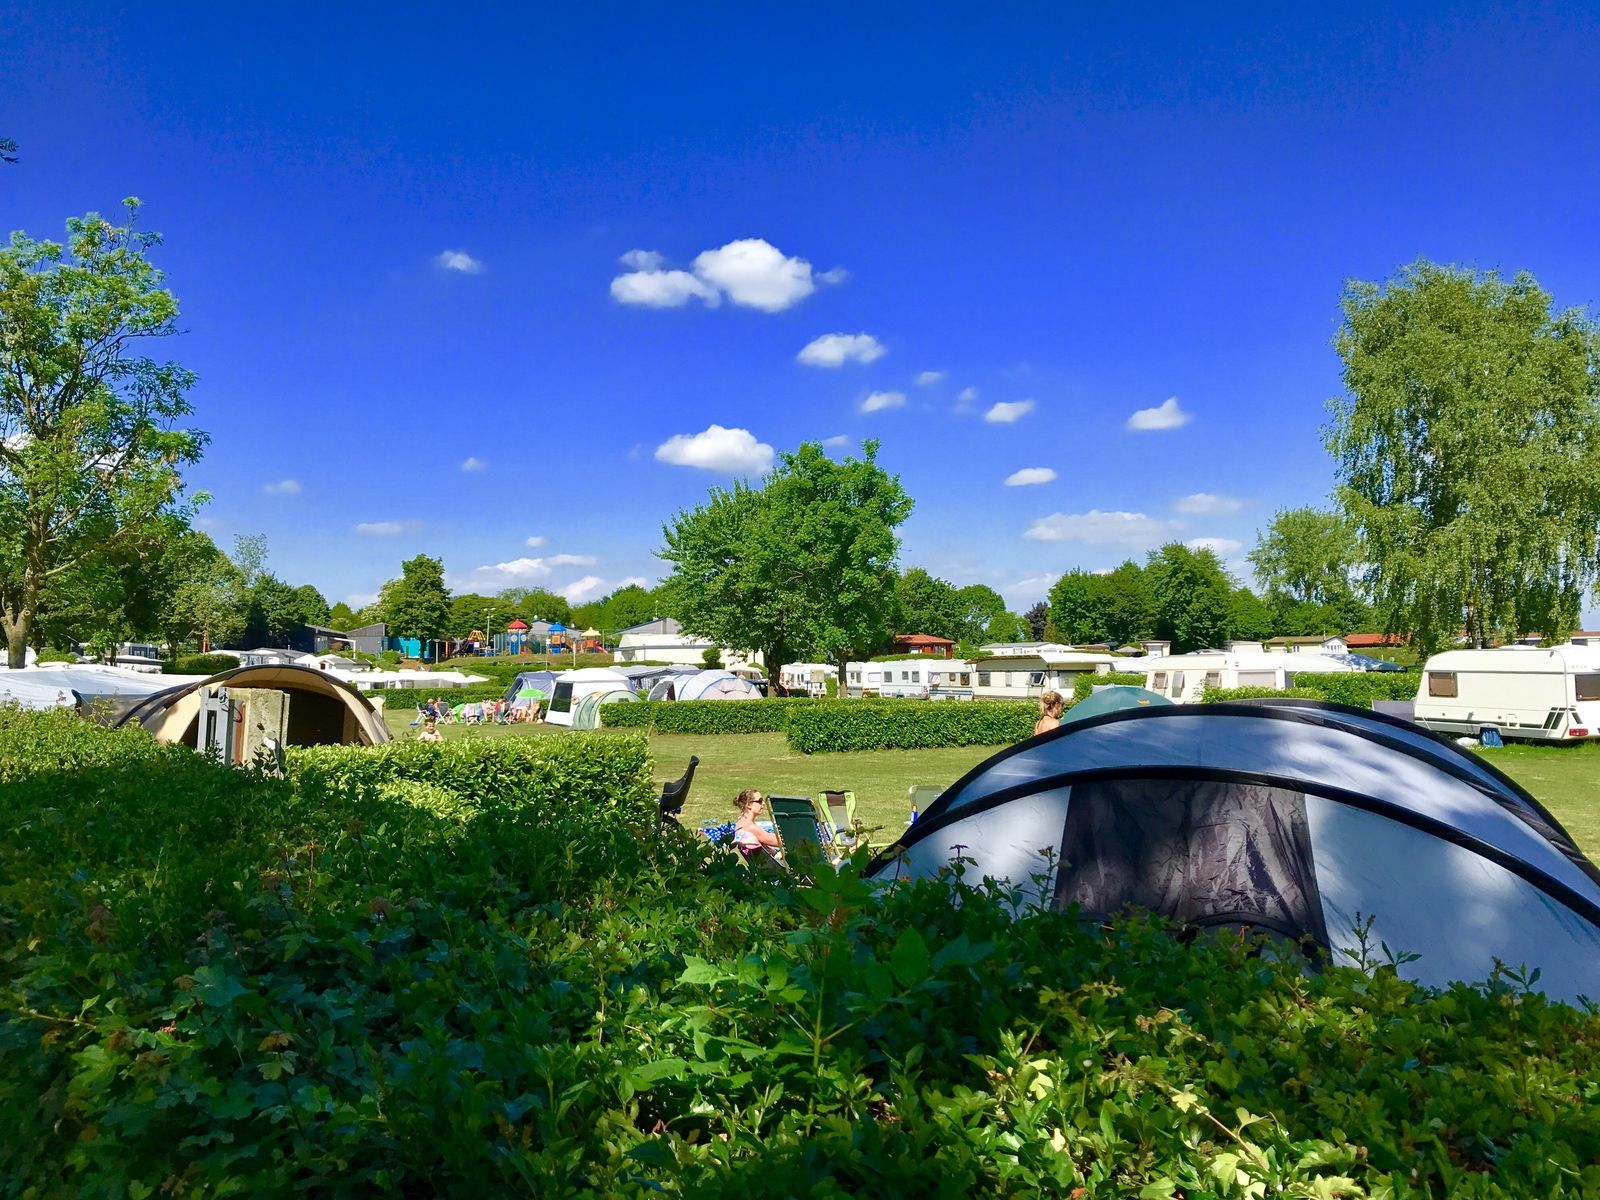 Camping-Stellplatz auf dem Feld am äußeren Ring